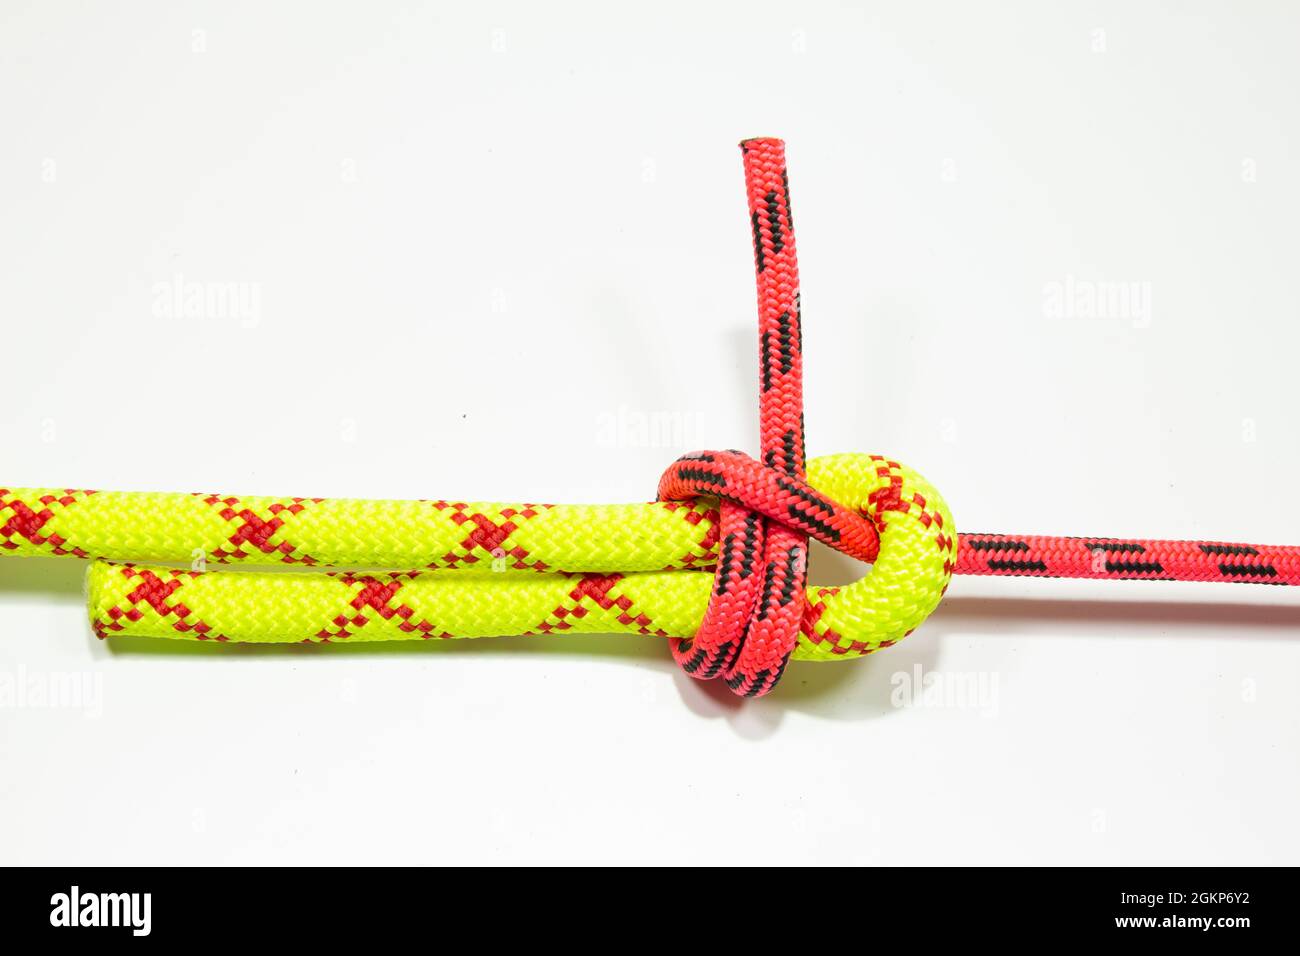 Doppeltes Blatt, Becket biegen oder Weberkupplung binden zwei farbige rote  und gelbe Seile. Bramshkotovy Knoten verwenden für das Verbinden von Linien  verschiedenen Durchmessers oder Stockfotografie - Alamy